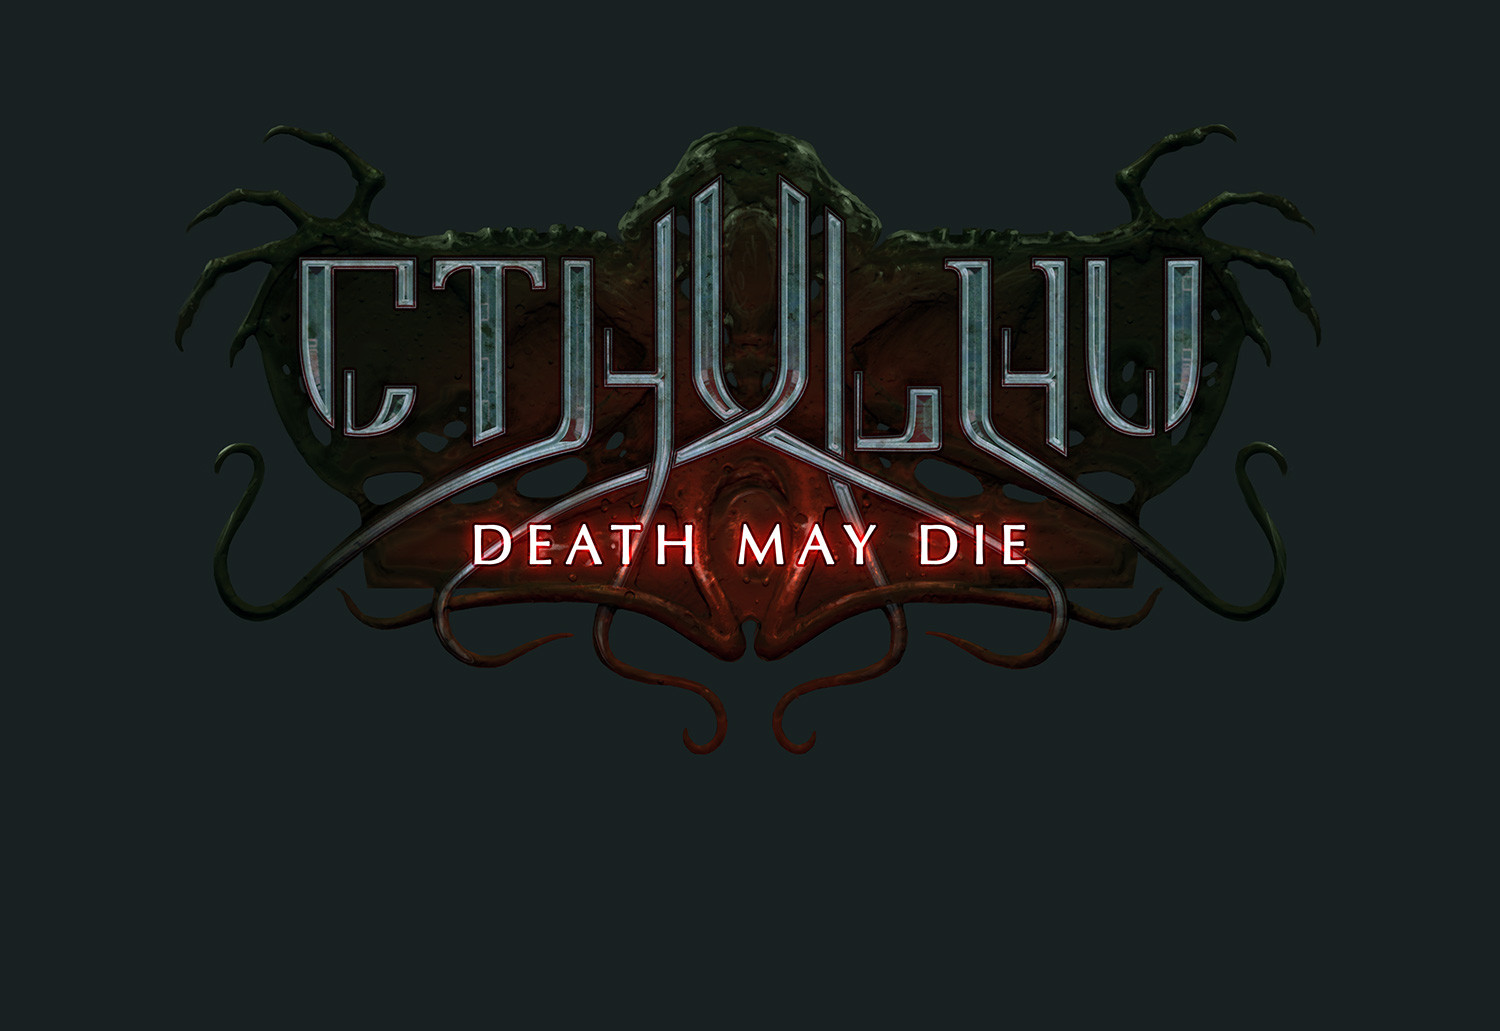 CTHULHU logo